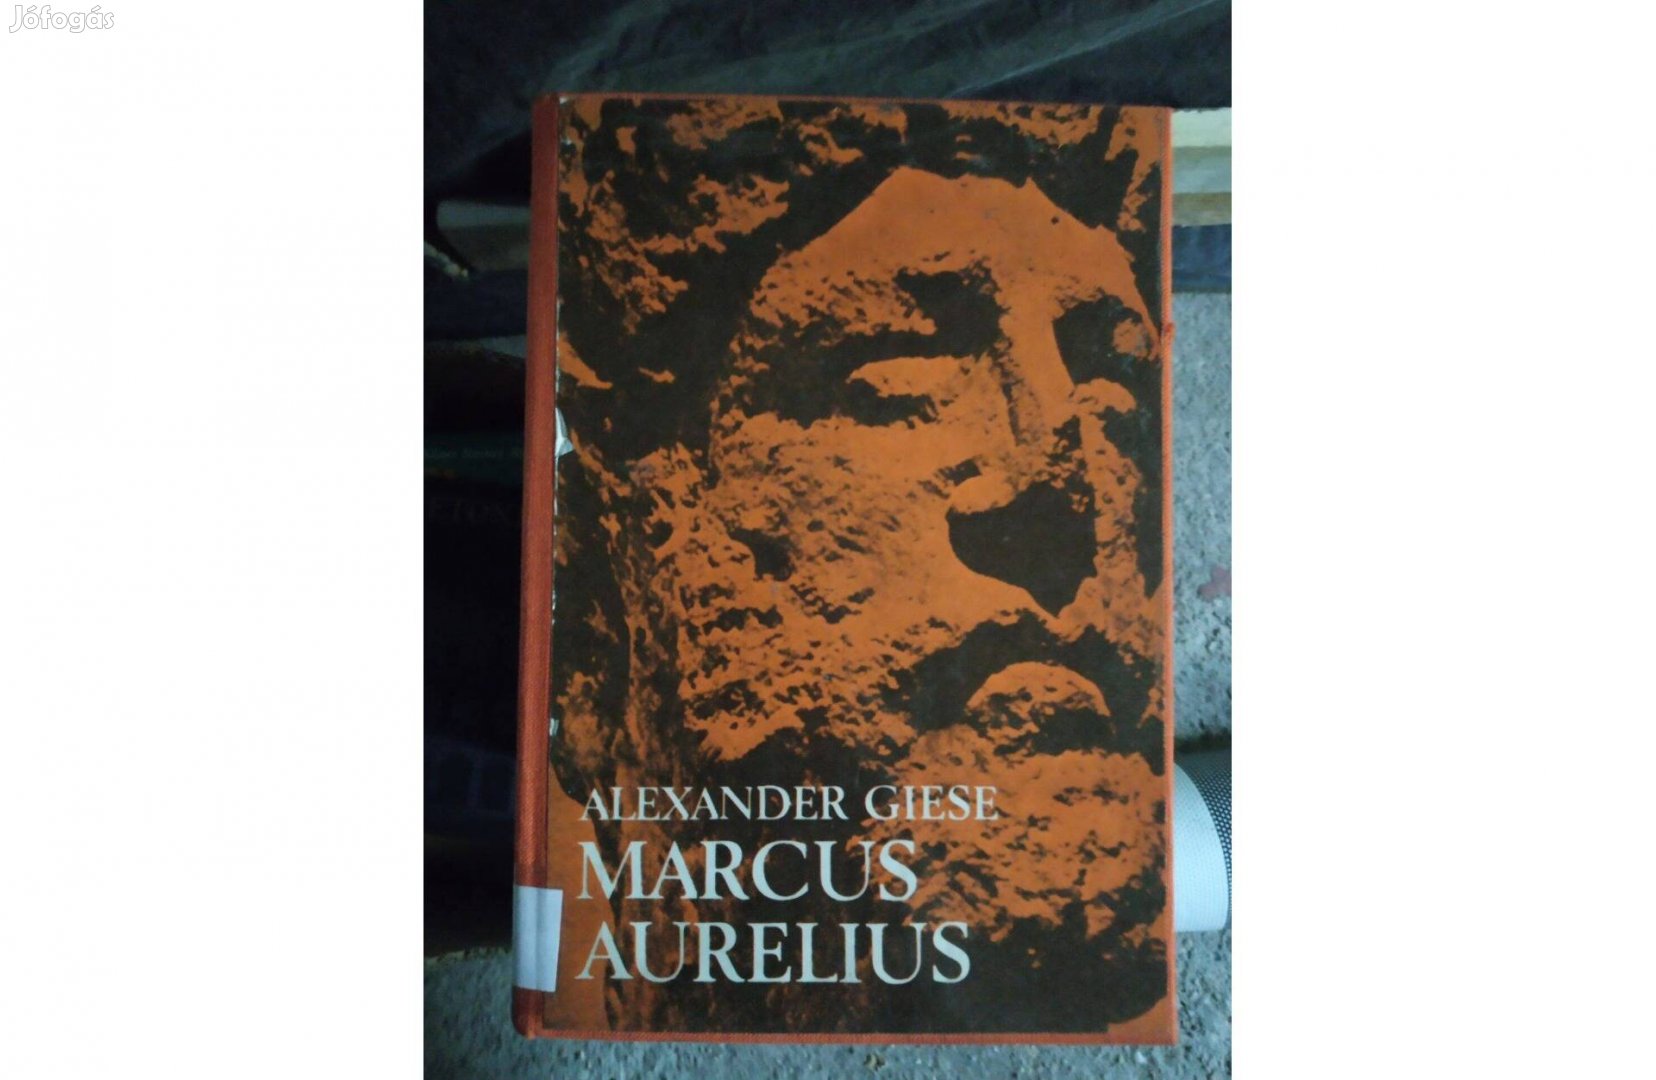 Alexander Giese - Marcus Aurelius könyv. Mindössze hét nap története